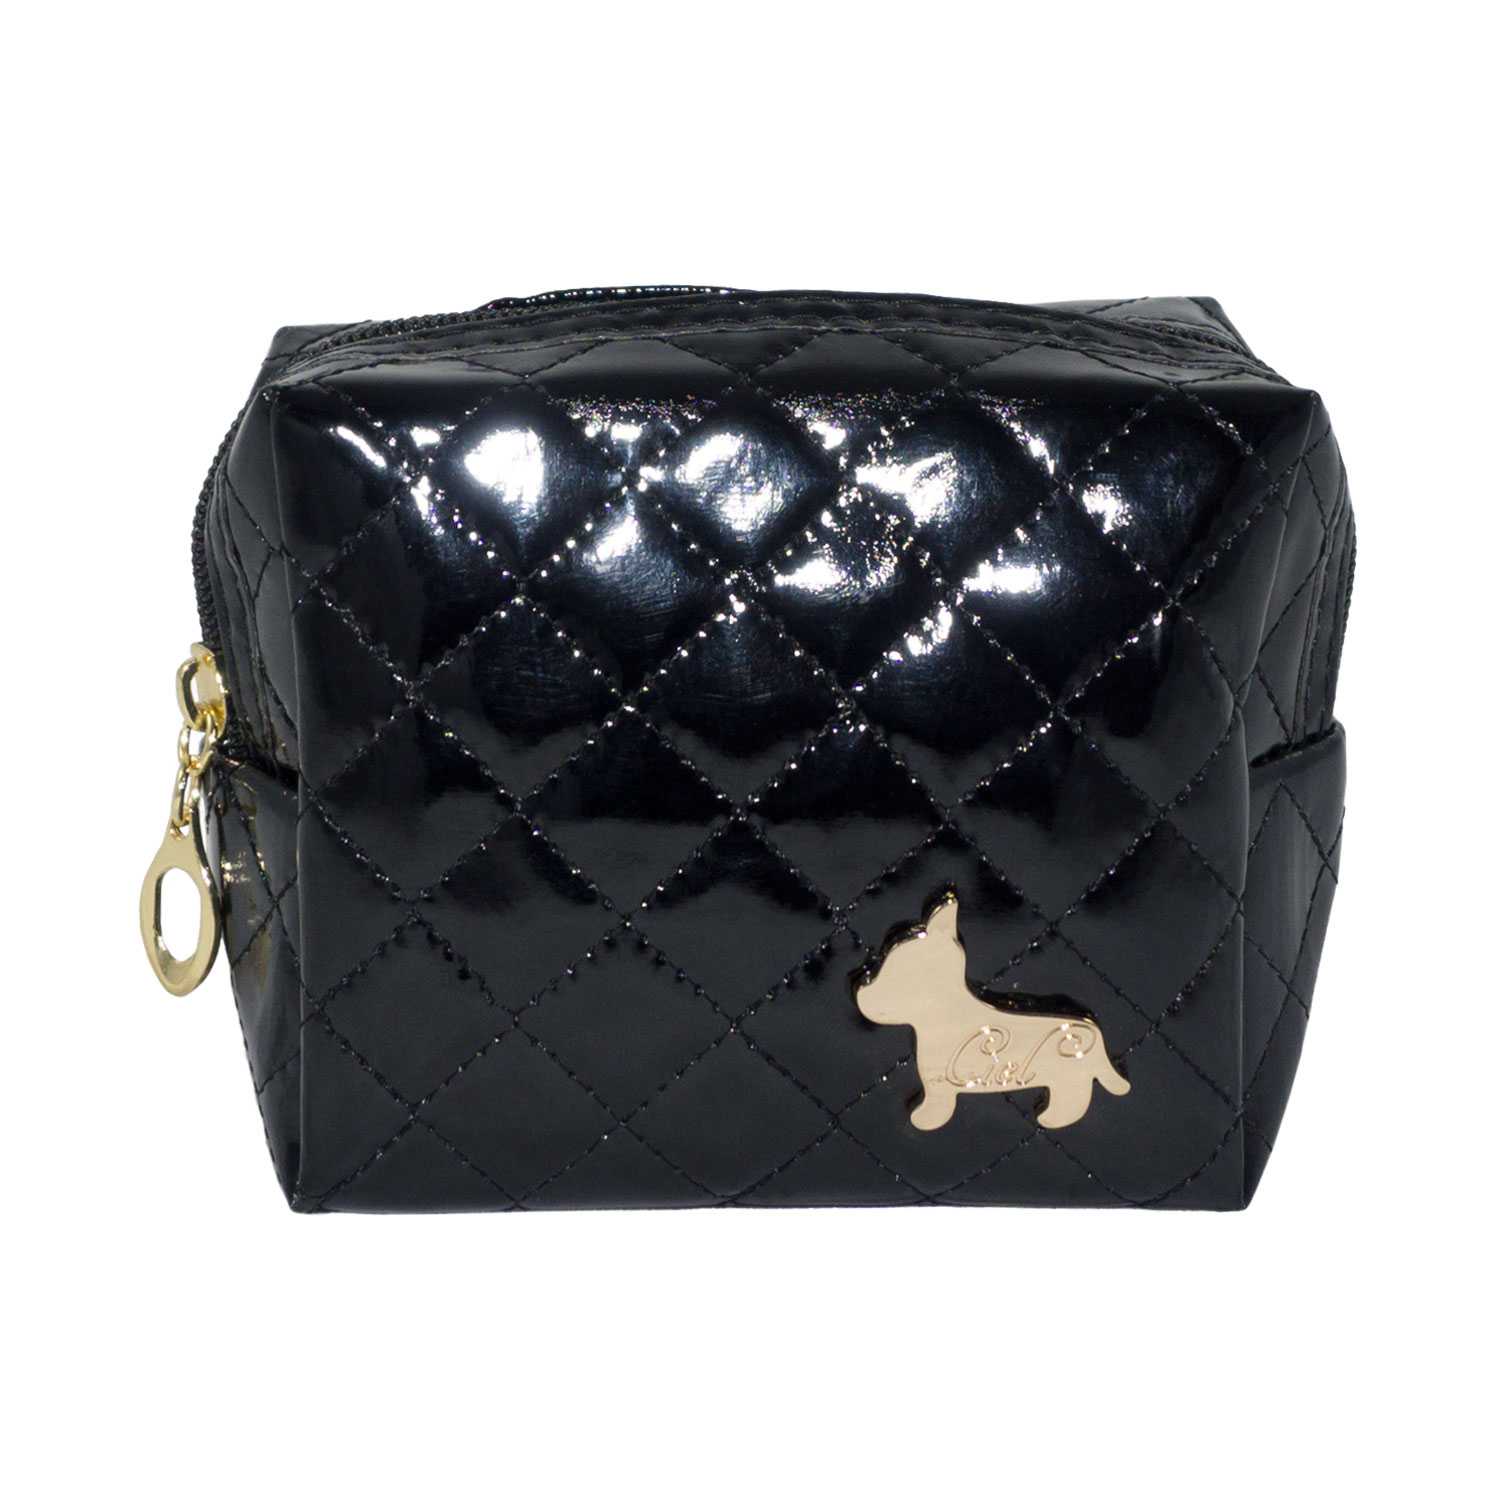 Shiny Rectangular Shape Cosmetic Pouch Bag - Black - Zestique